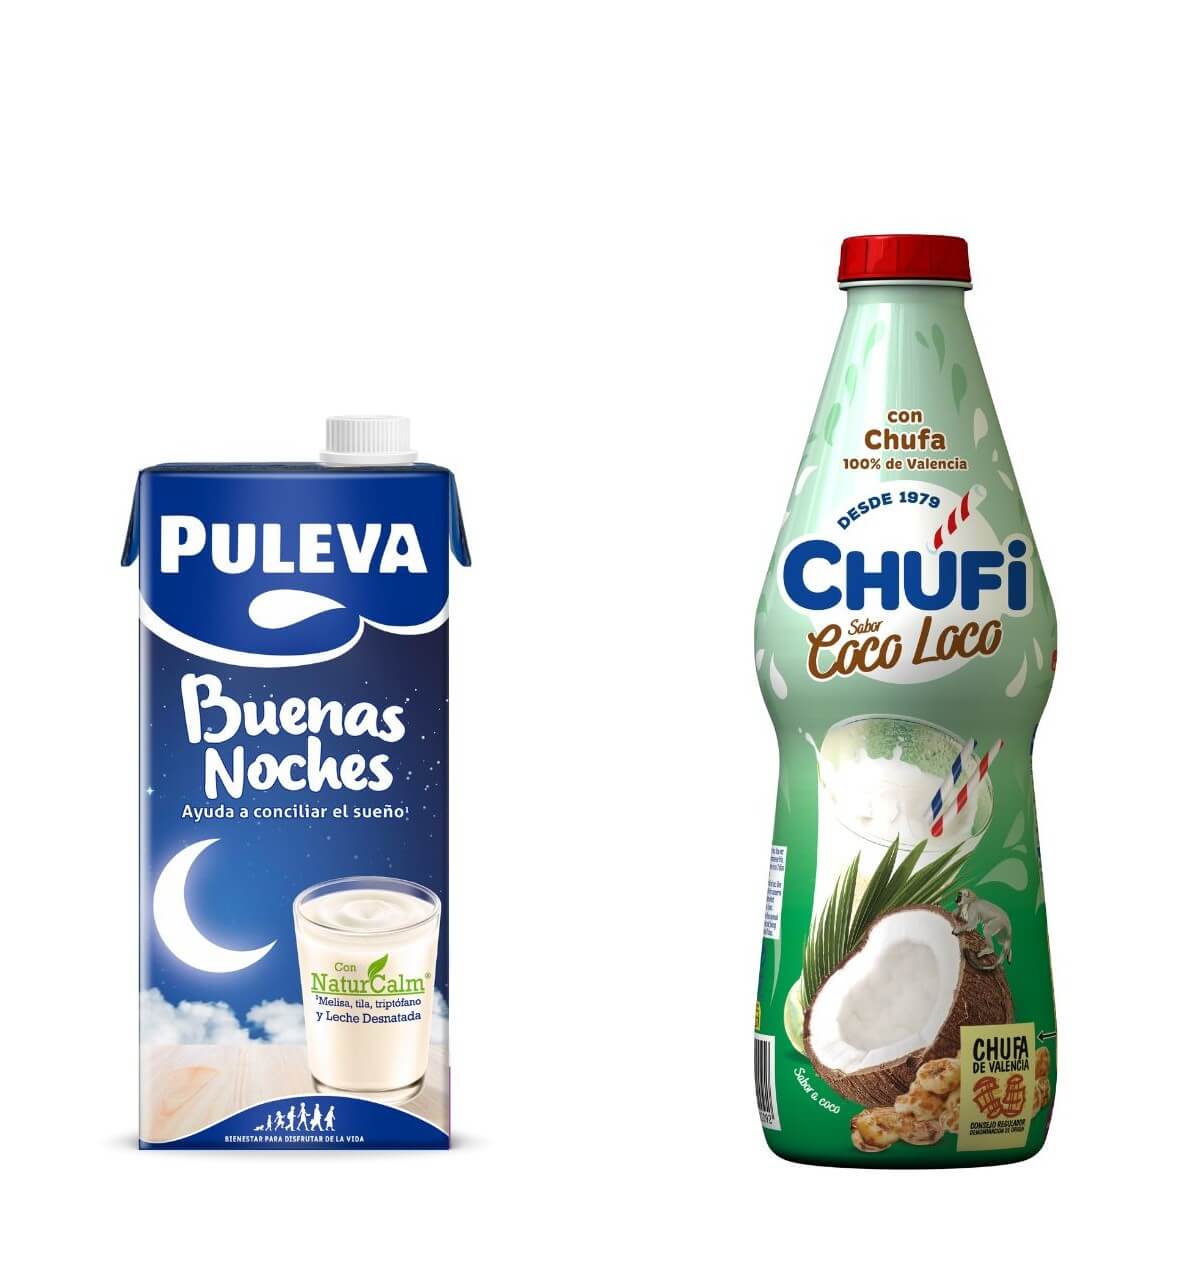 Puleva Buenas Noches y Chufi Coco Loco, dos innovaciones de éxito de la industria alimentaria española